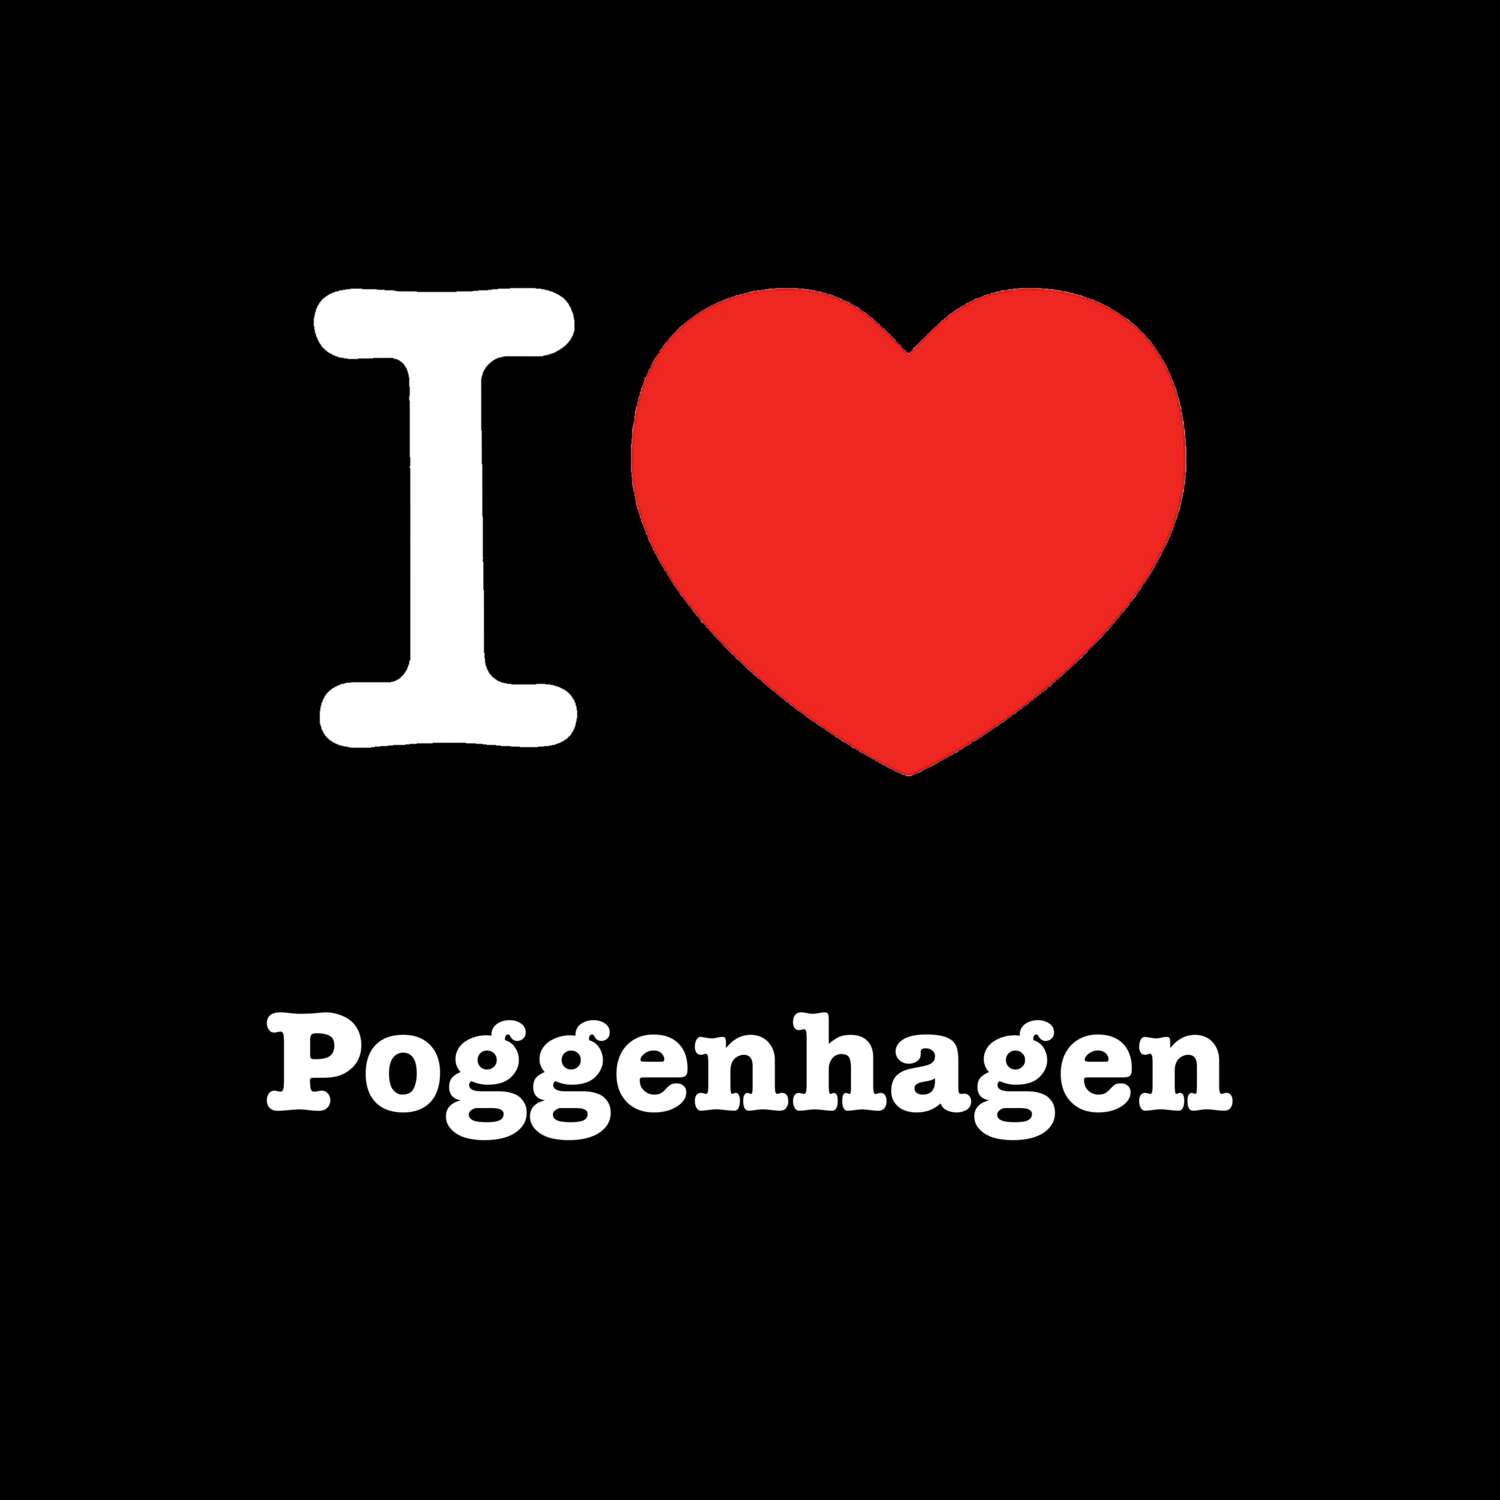 Poggenhagen T-Shirt »I love«